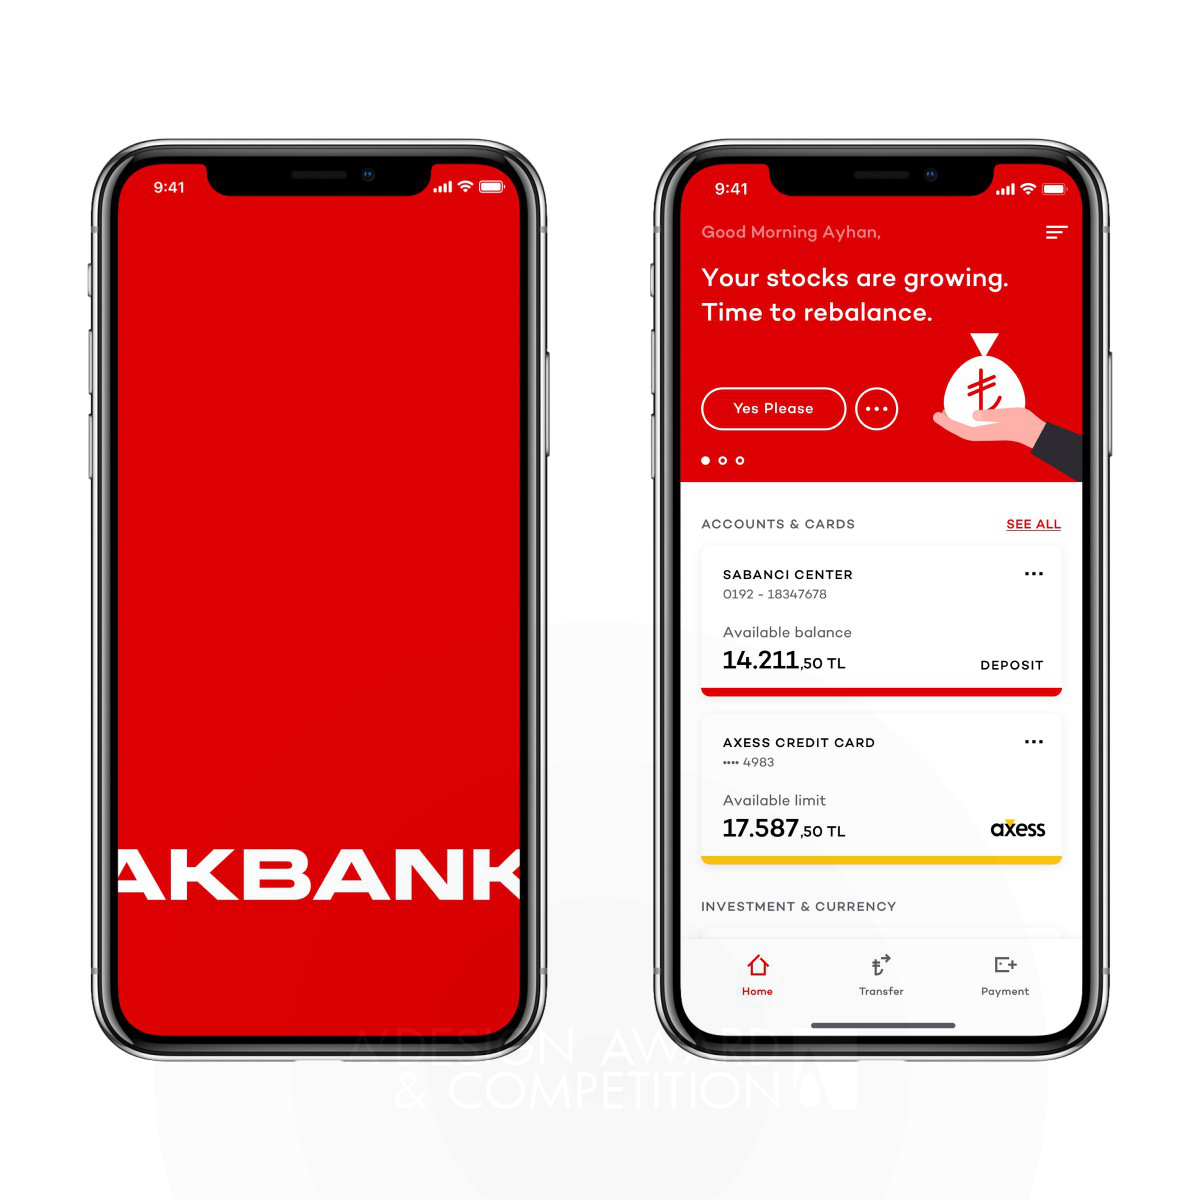 Akbank App